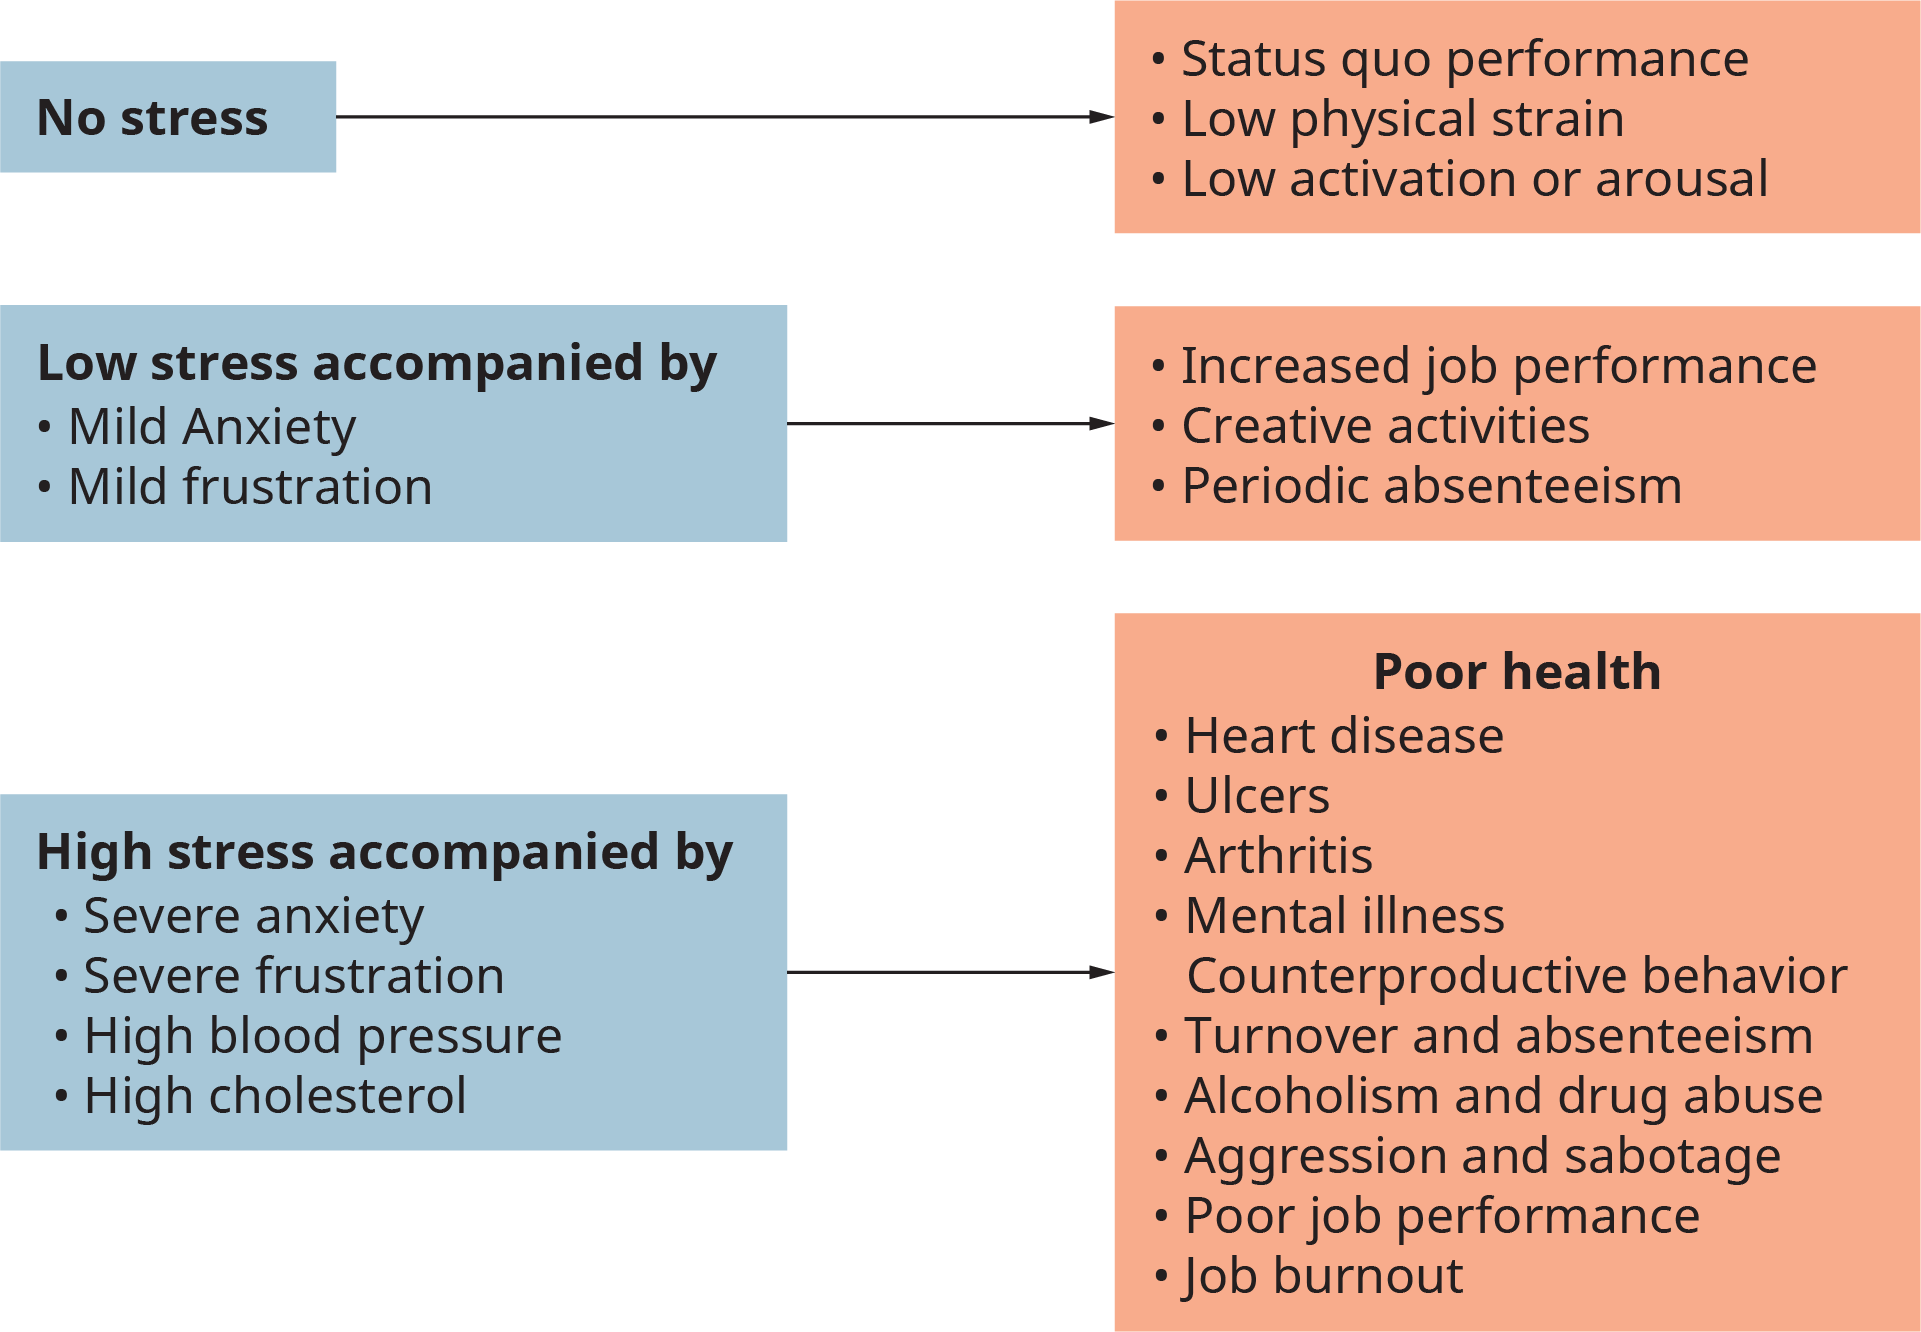 Una ilustración muestra las principales consecuencias en tres niveles de intensidad diferentes del estrés relacionado con el trabajo.